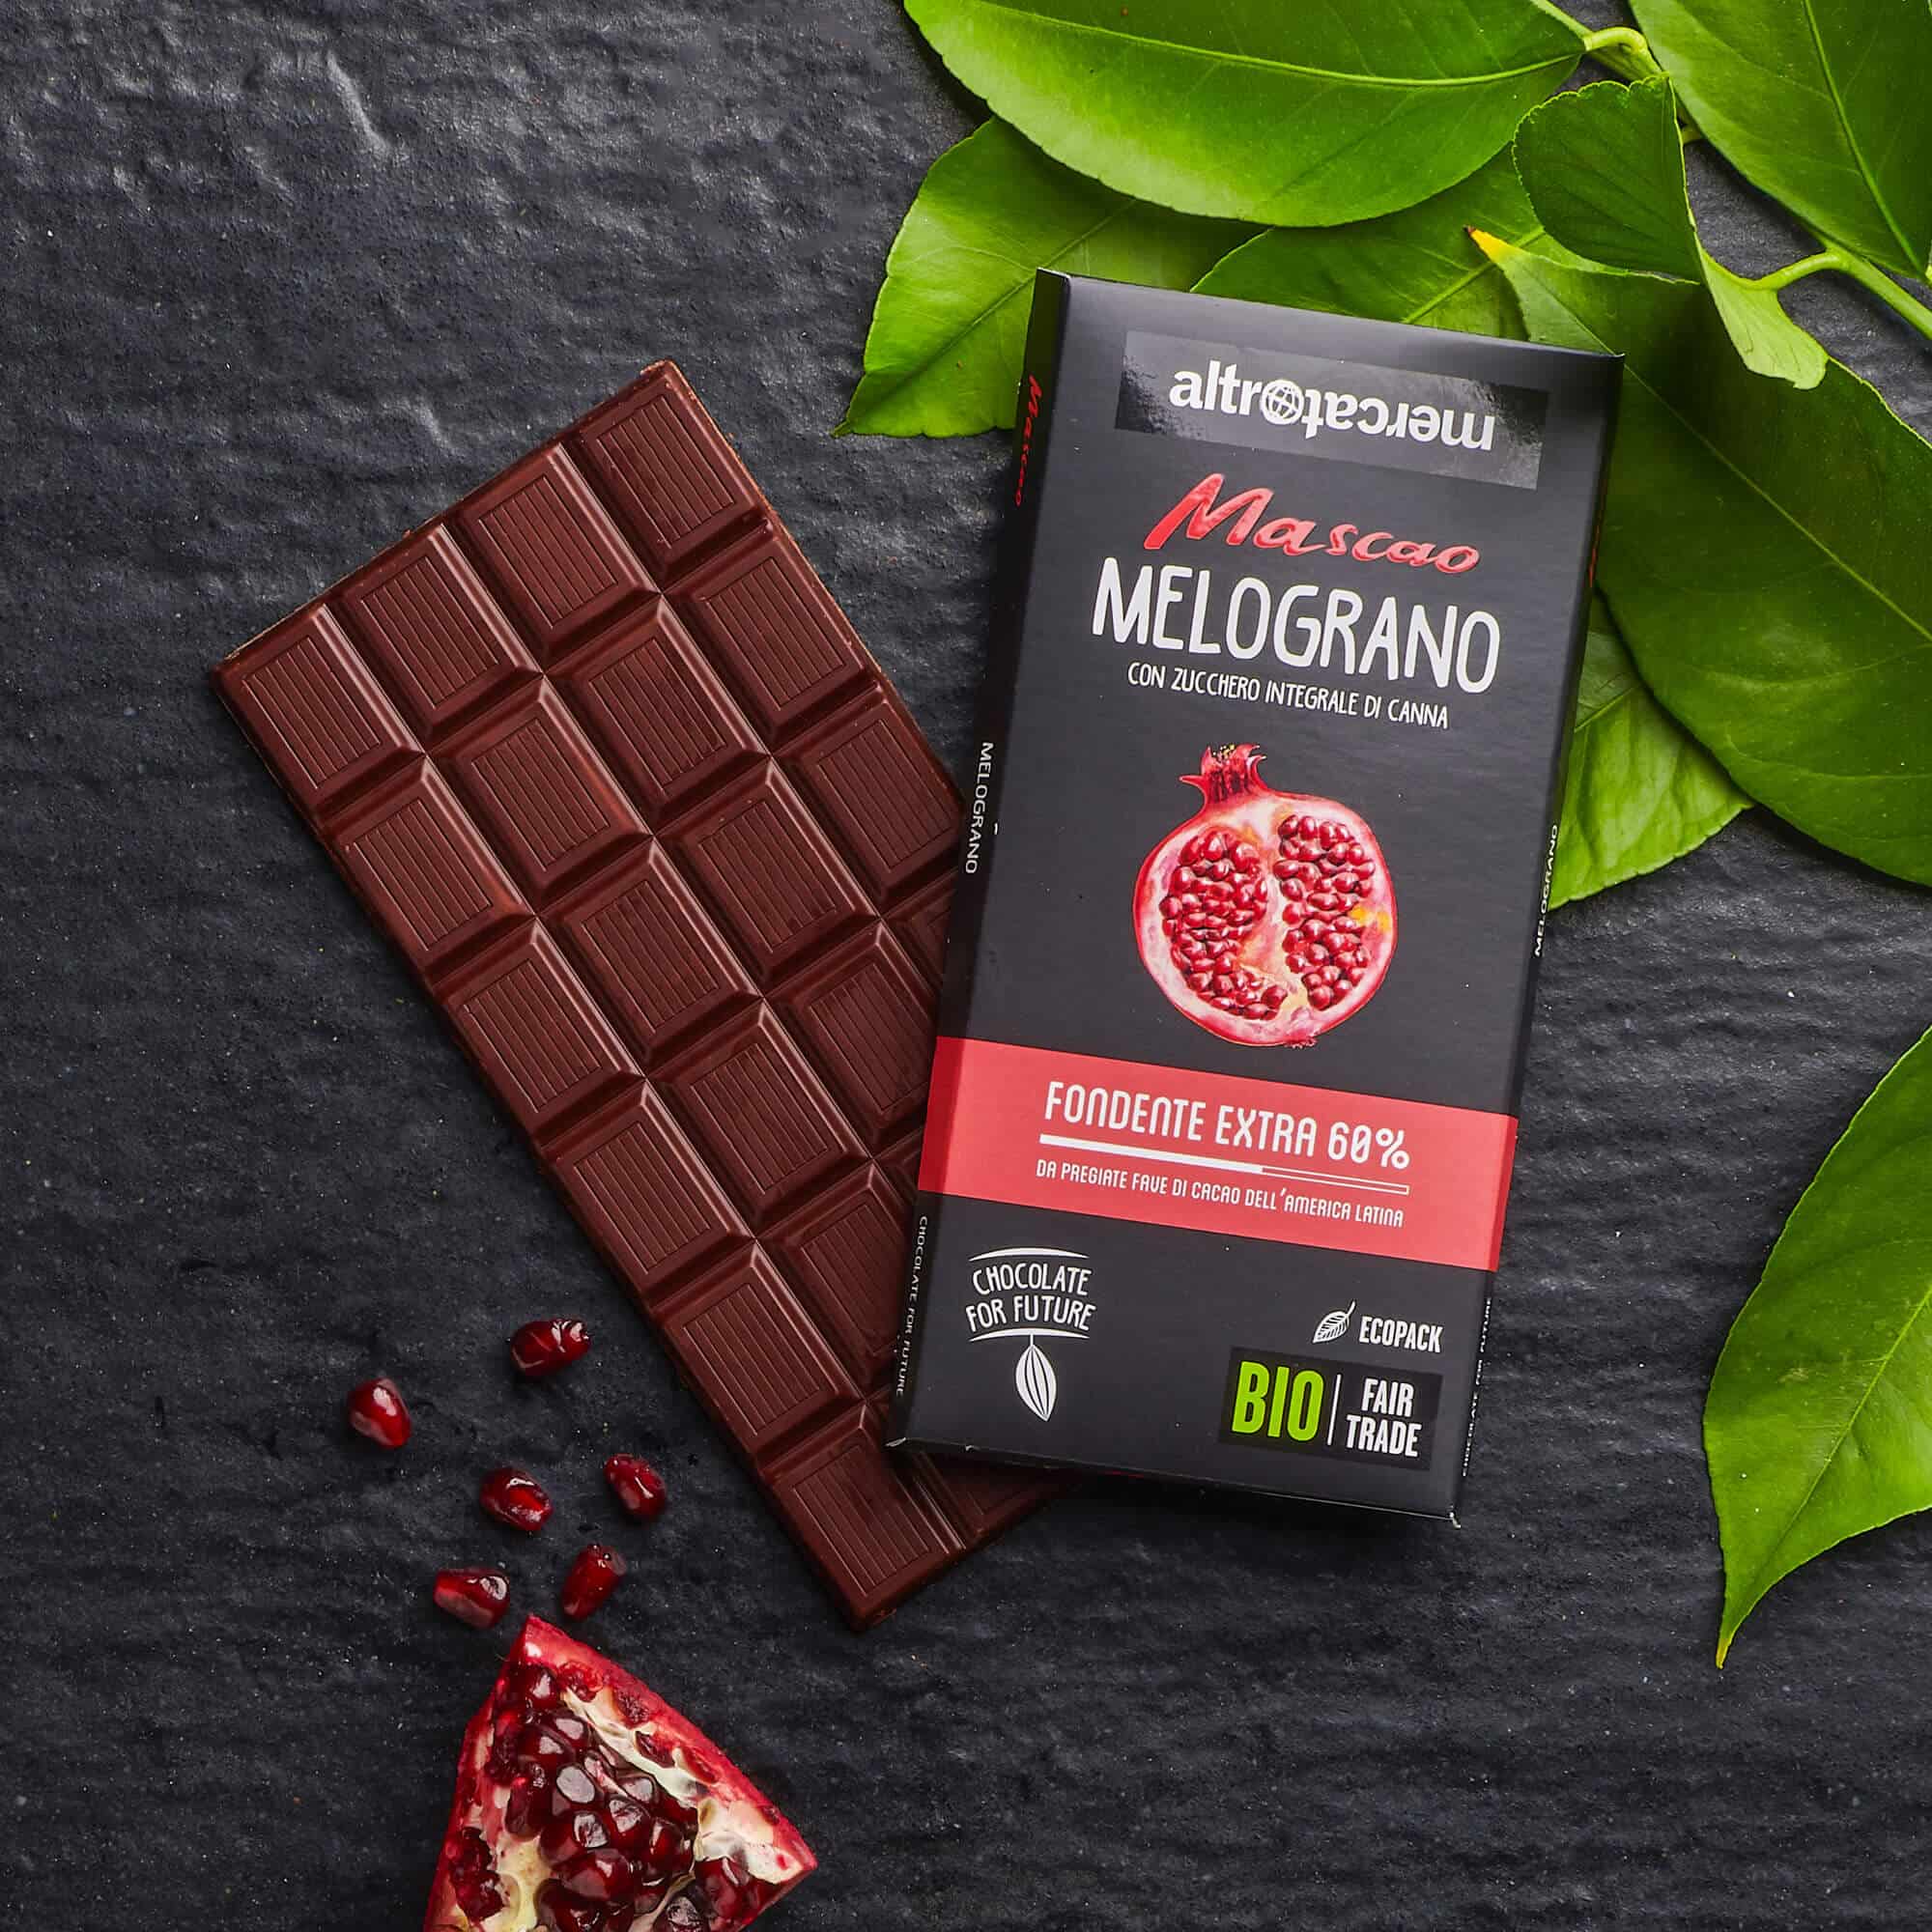 Cioccolato Mascao fondente extra al melograno - bio (3)